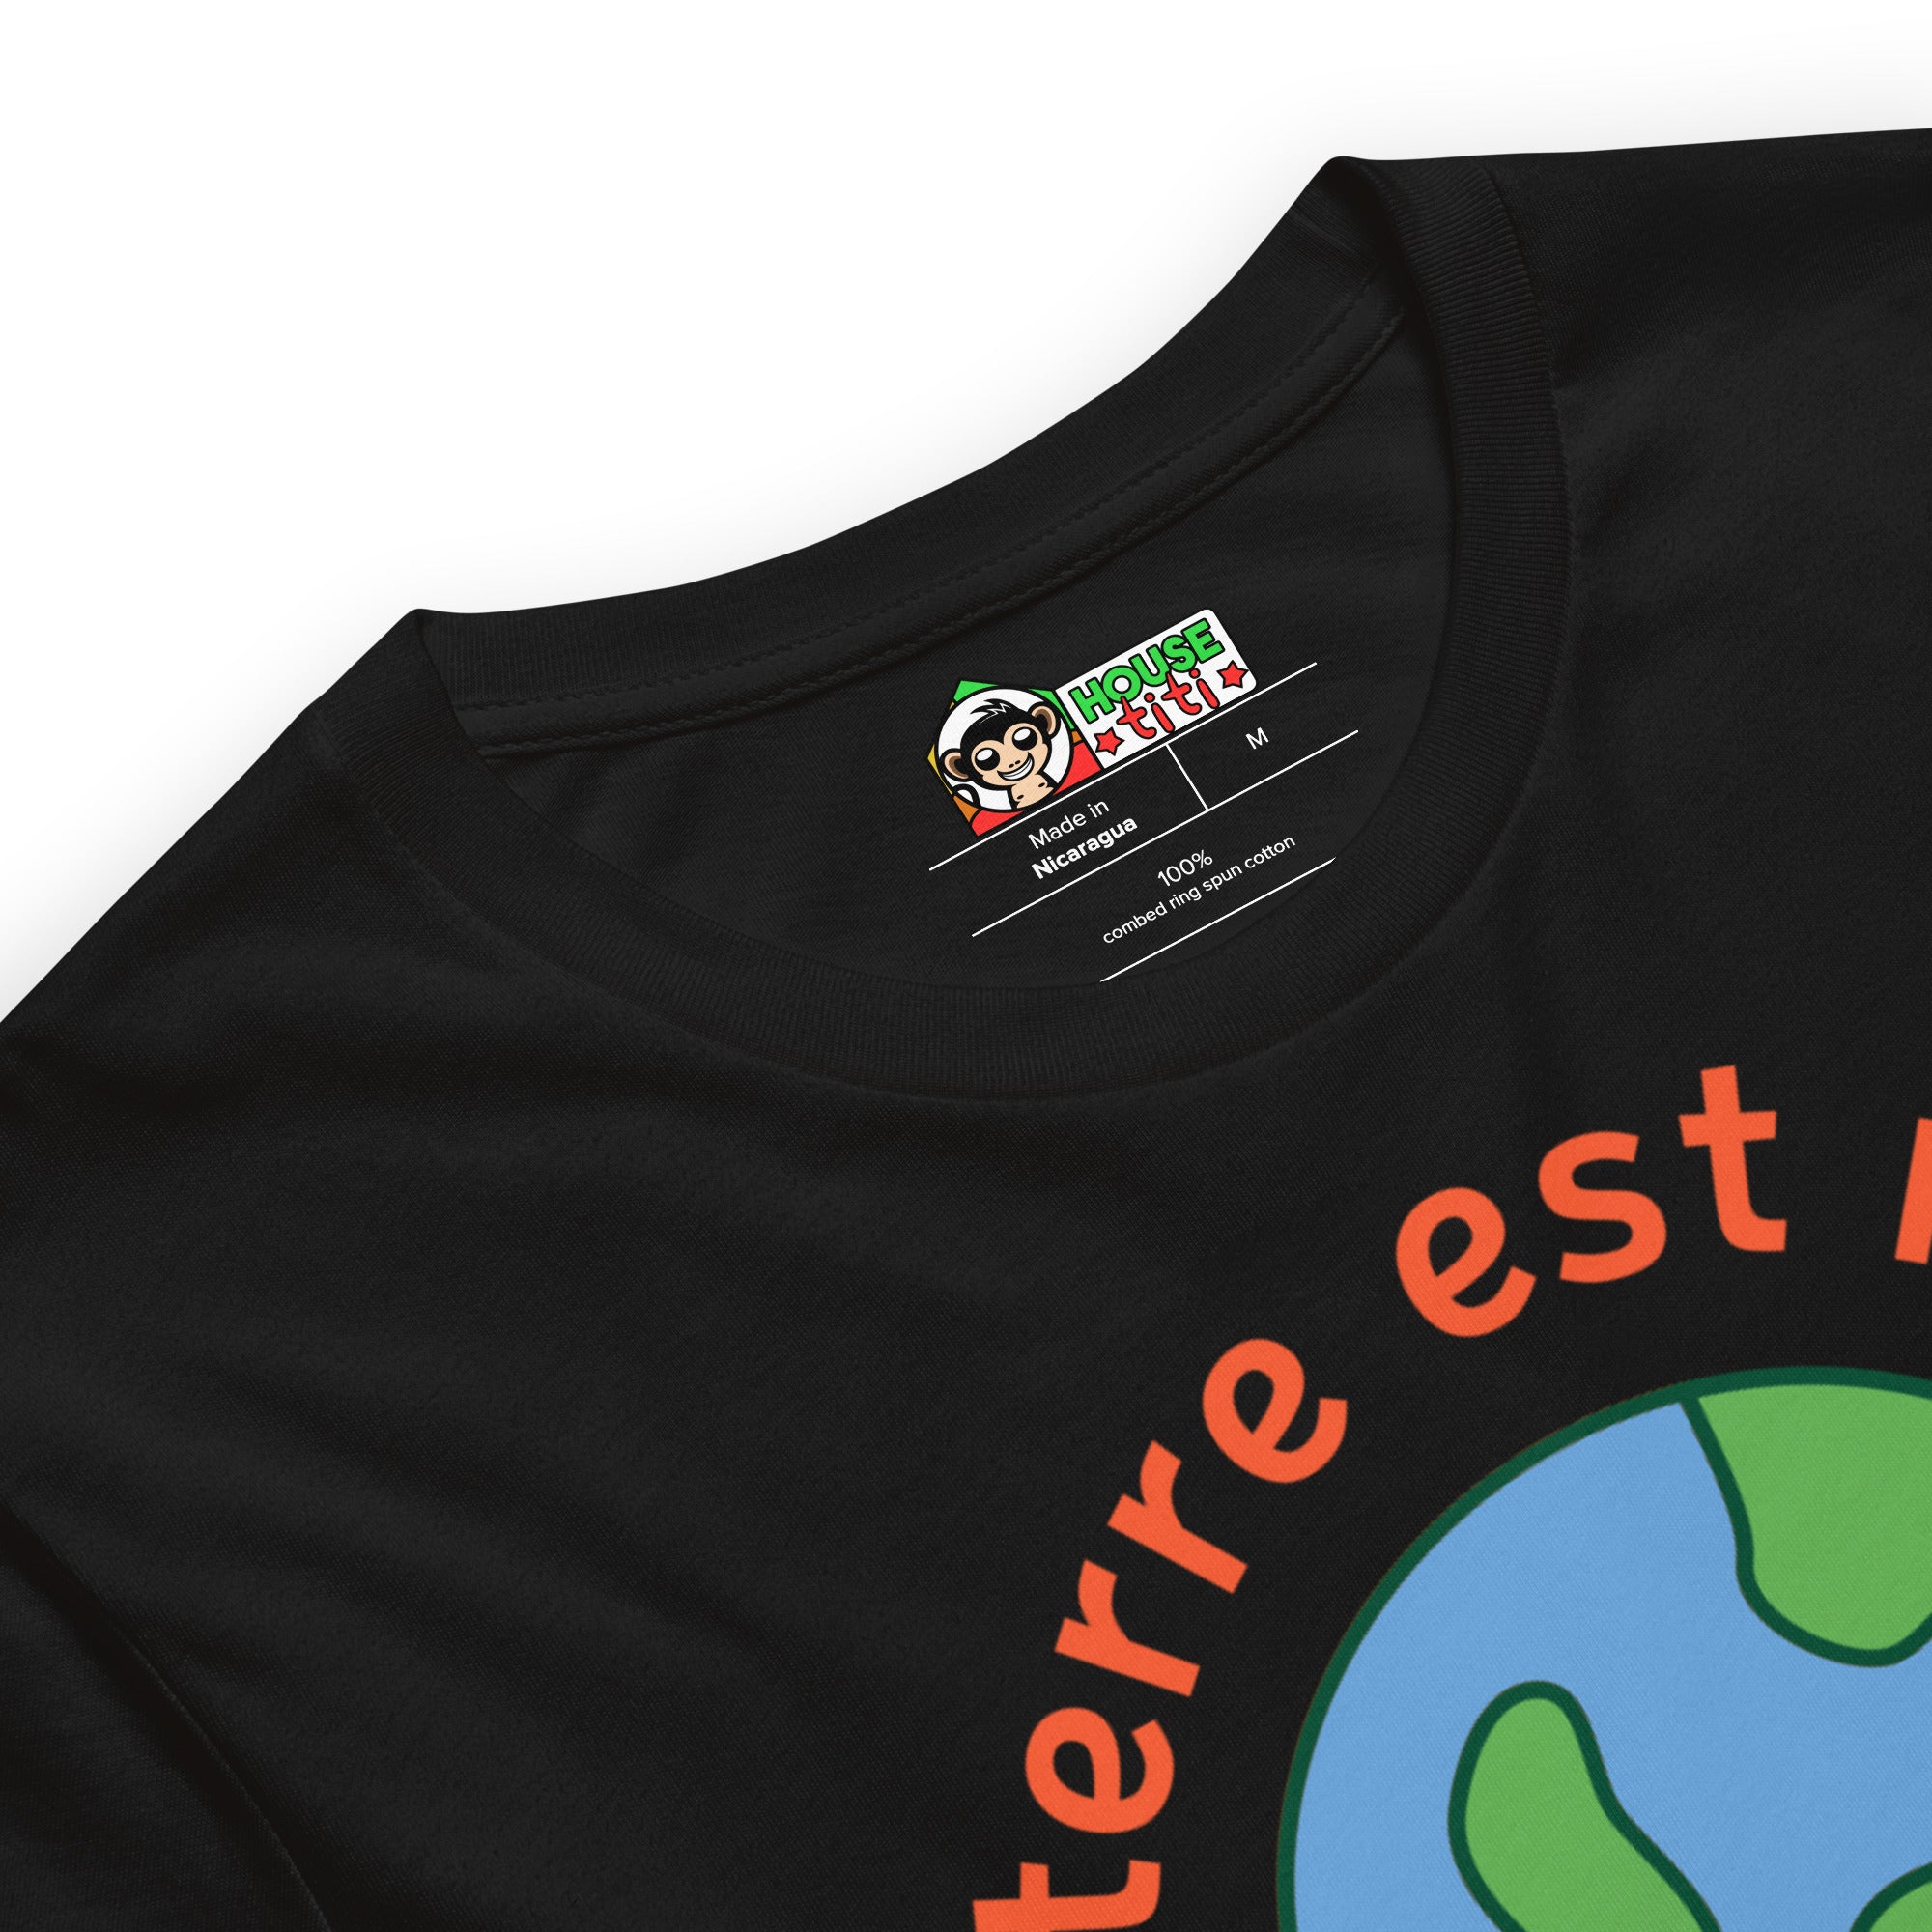 T-shirt La Terre est Ronde Mais Il y a Des Cons Dans Tous Les...